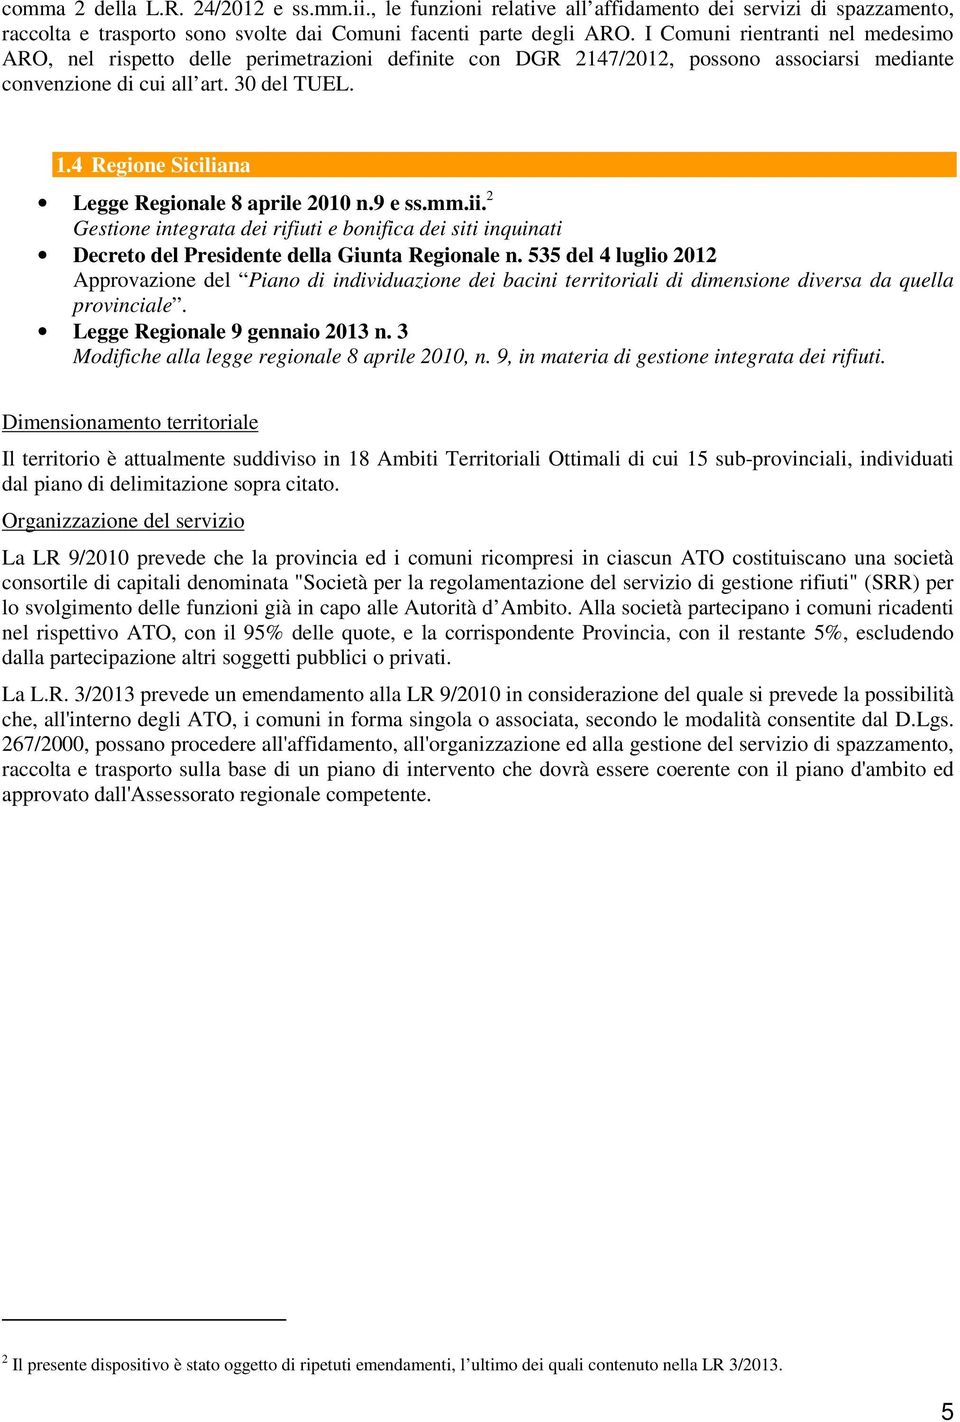 4 Regione Siciliana Legge Regionale 8 aprile 2010 n.9 e ss.mm.ii. 2 Gestione integrata dei rifiuti e bonifica dei siti inquinati Decreto del Presidente della Giunta Regionale n.